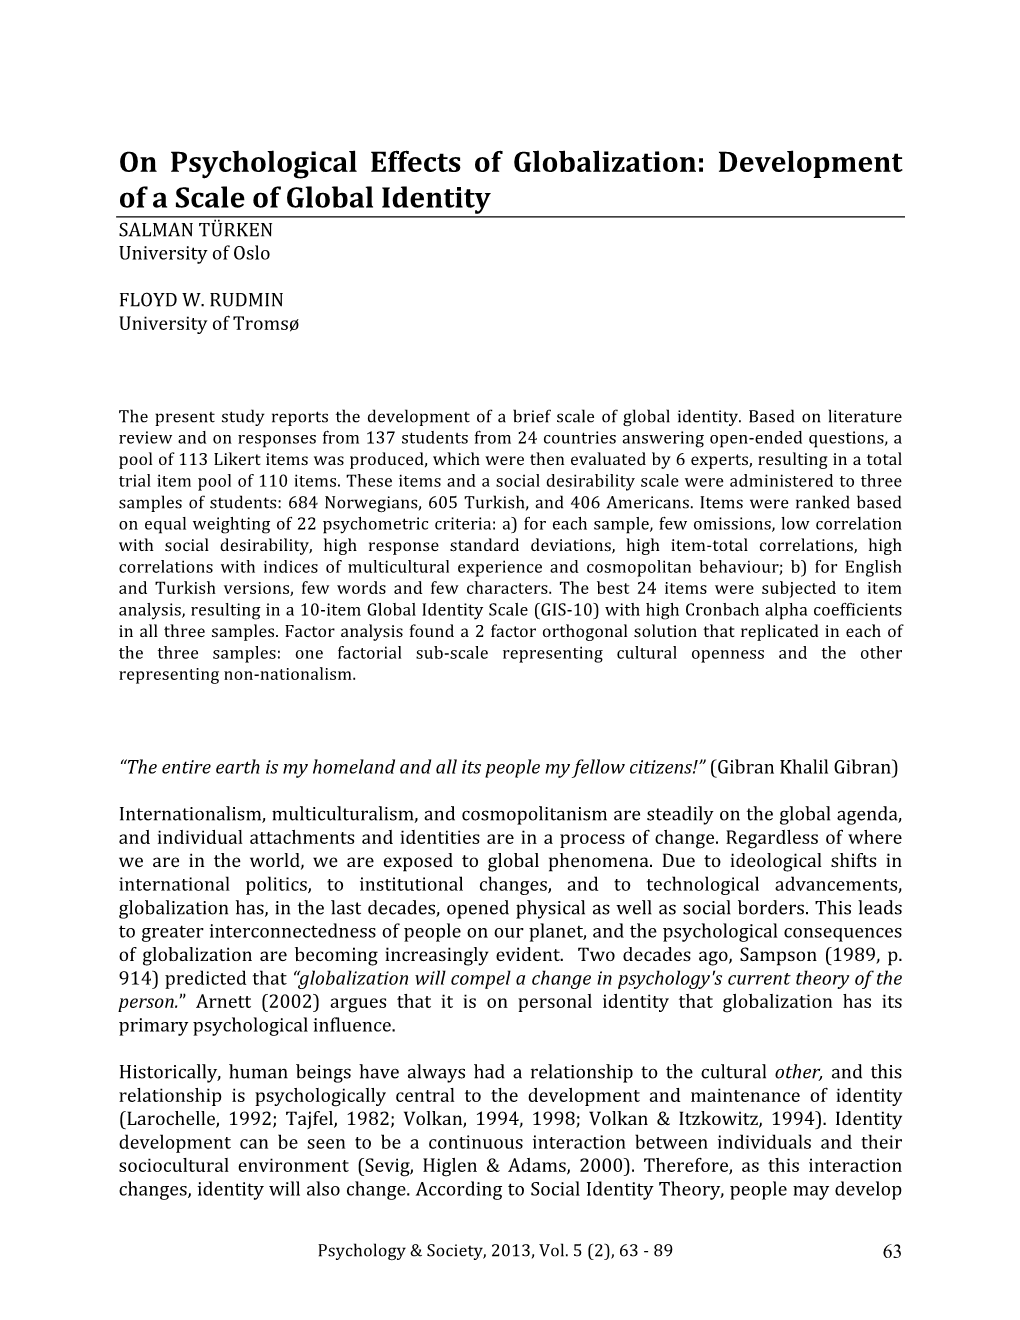 On Psychological Effects of Globalization: Development of a Scale of Global Identity SALMAN TÜRKEN University of Oslo